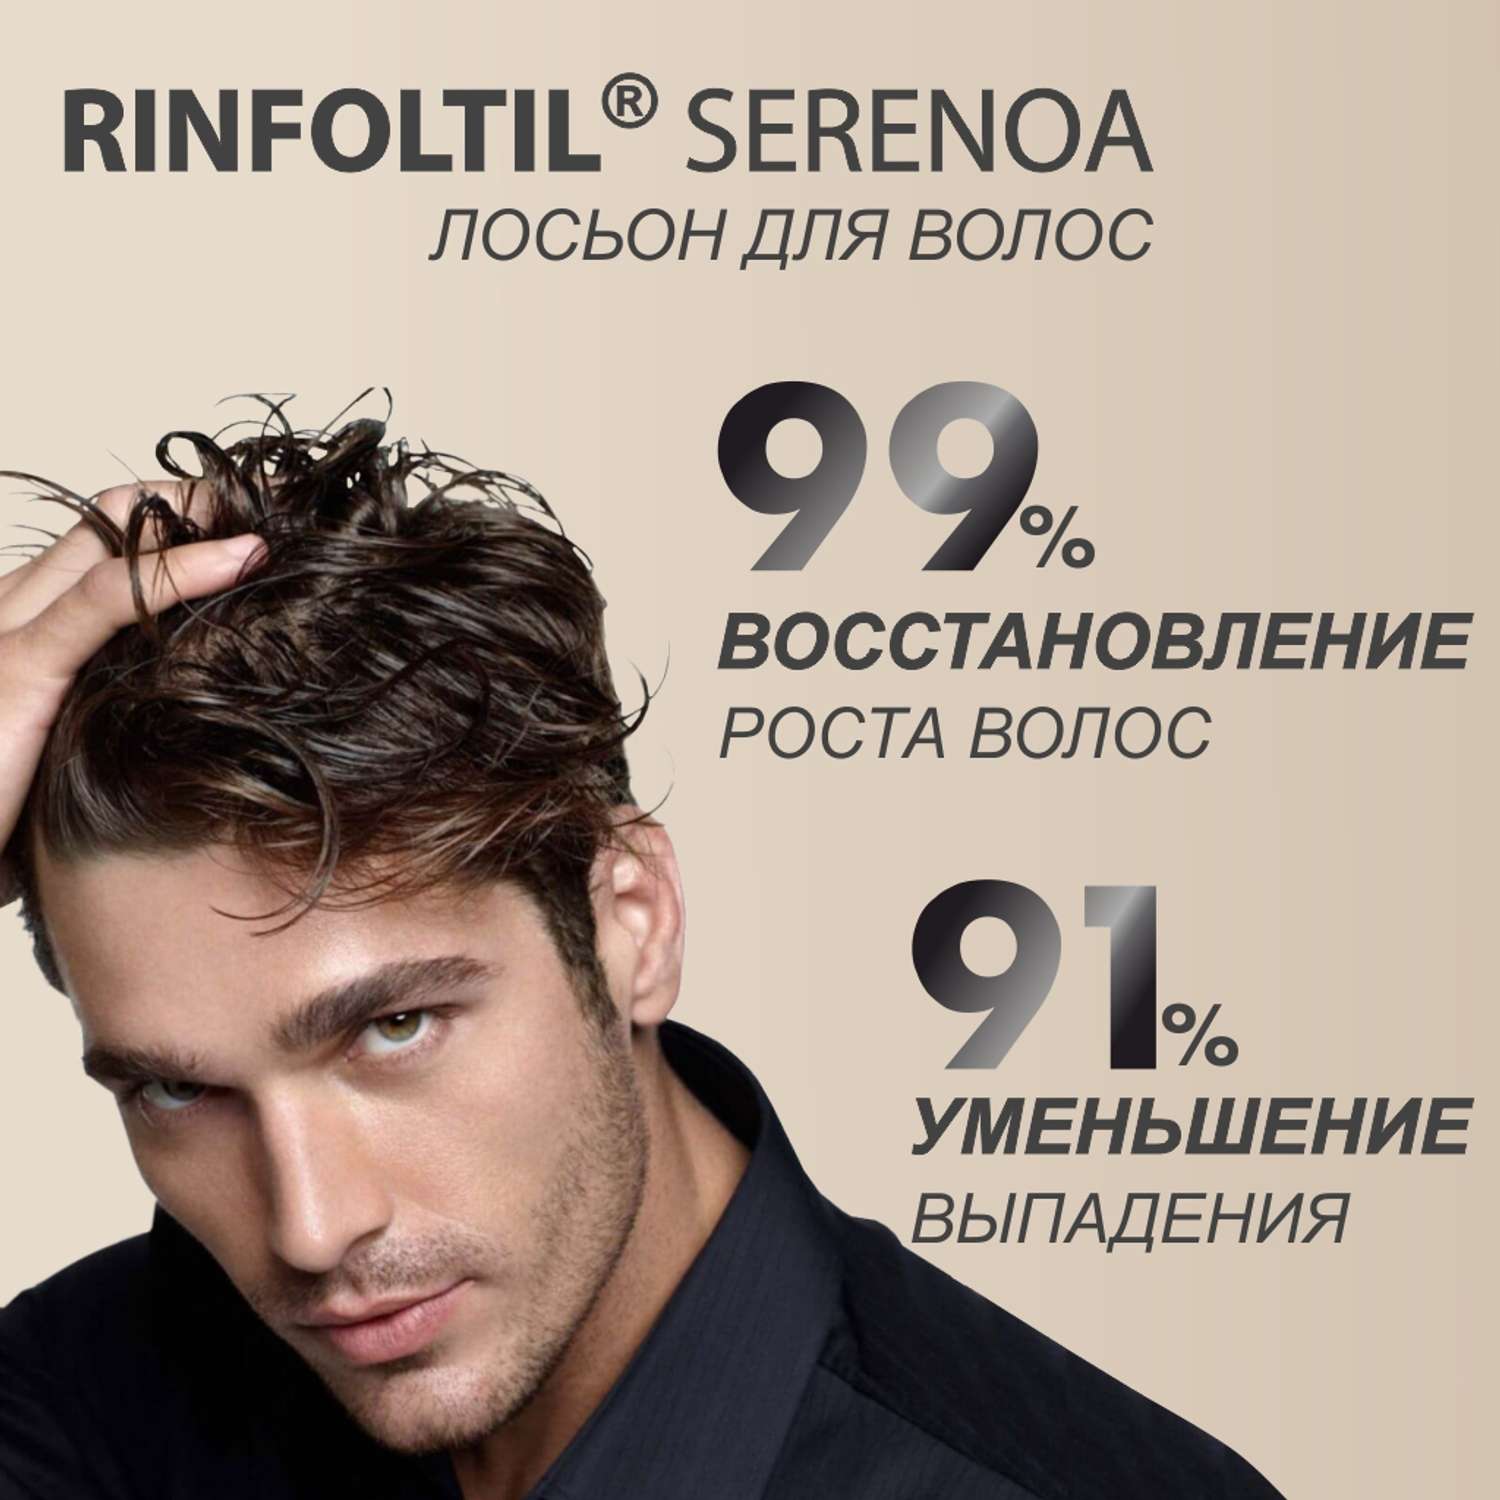 Лосьон Rinfoltil СЕРЕНОА лосьон для мужчин для улучшения качества волос и ухода за кожей головы - фото 5